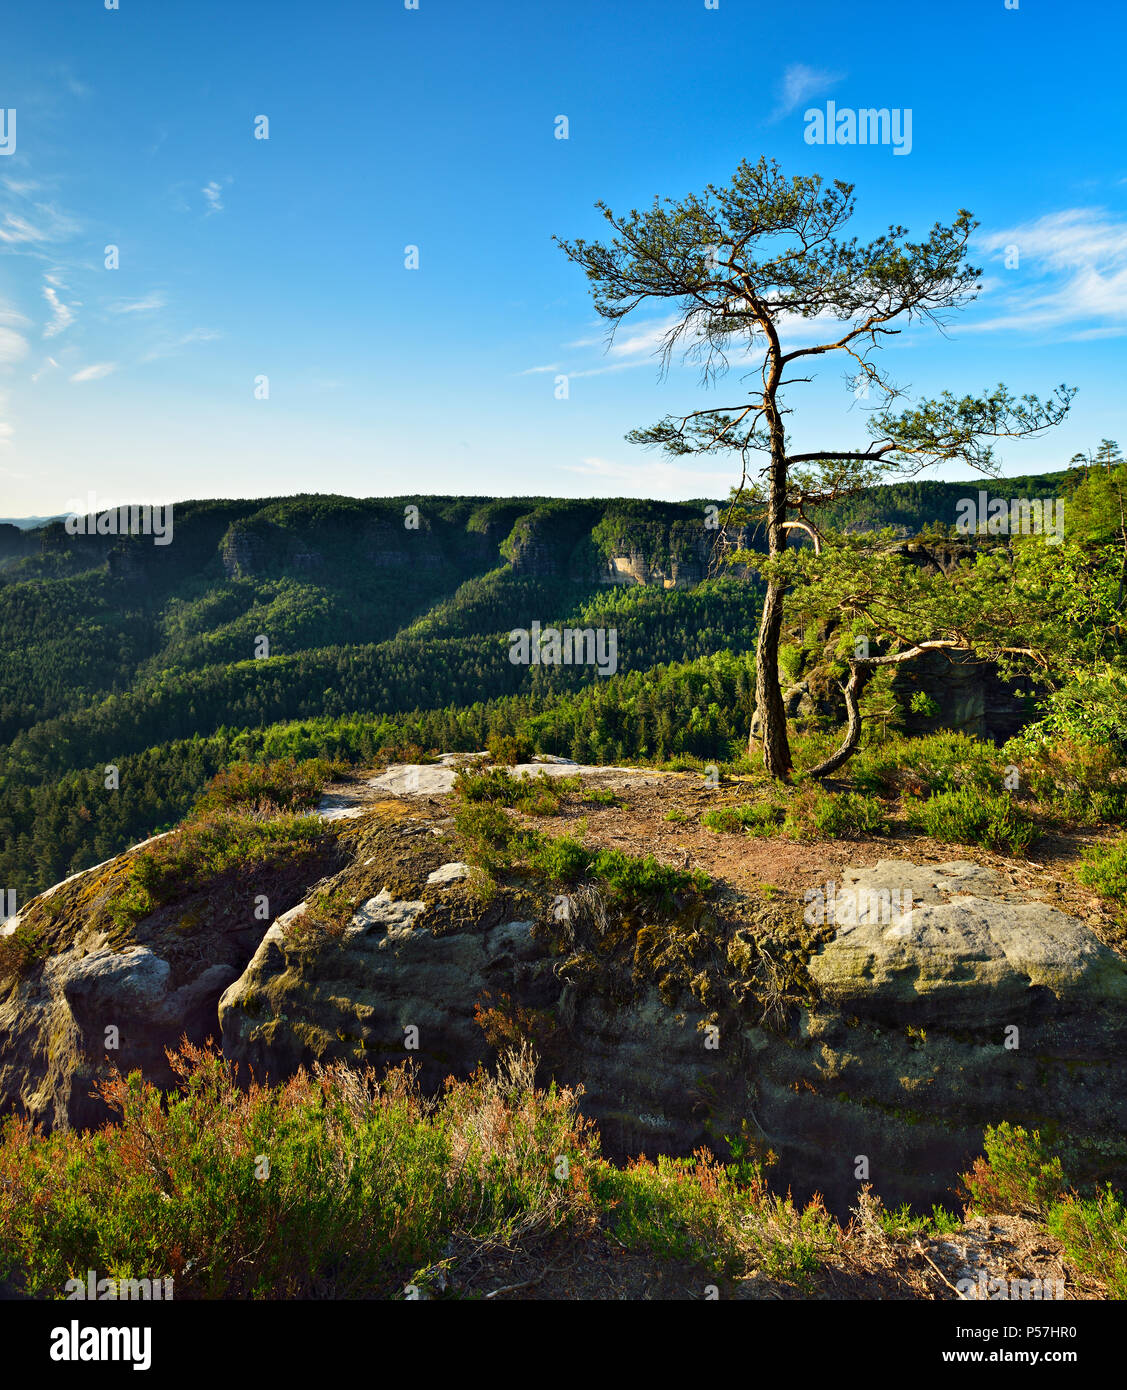 Pine sur rochers de grès à Kleiner Winterberg, des montagnes de grès de l'Elbe, la Suisse Saxonne Parc National, Saxe, Allemagne Banque D'Images